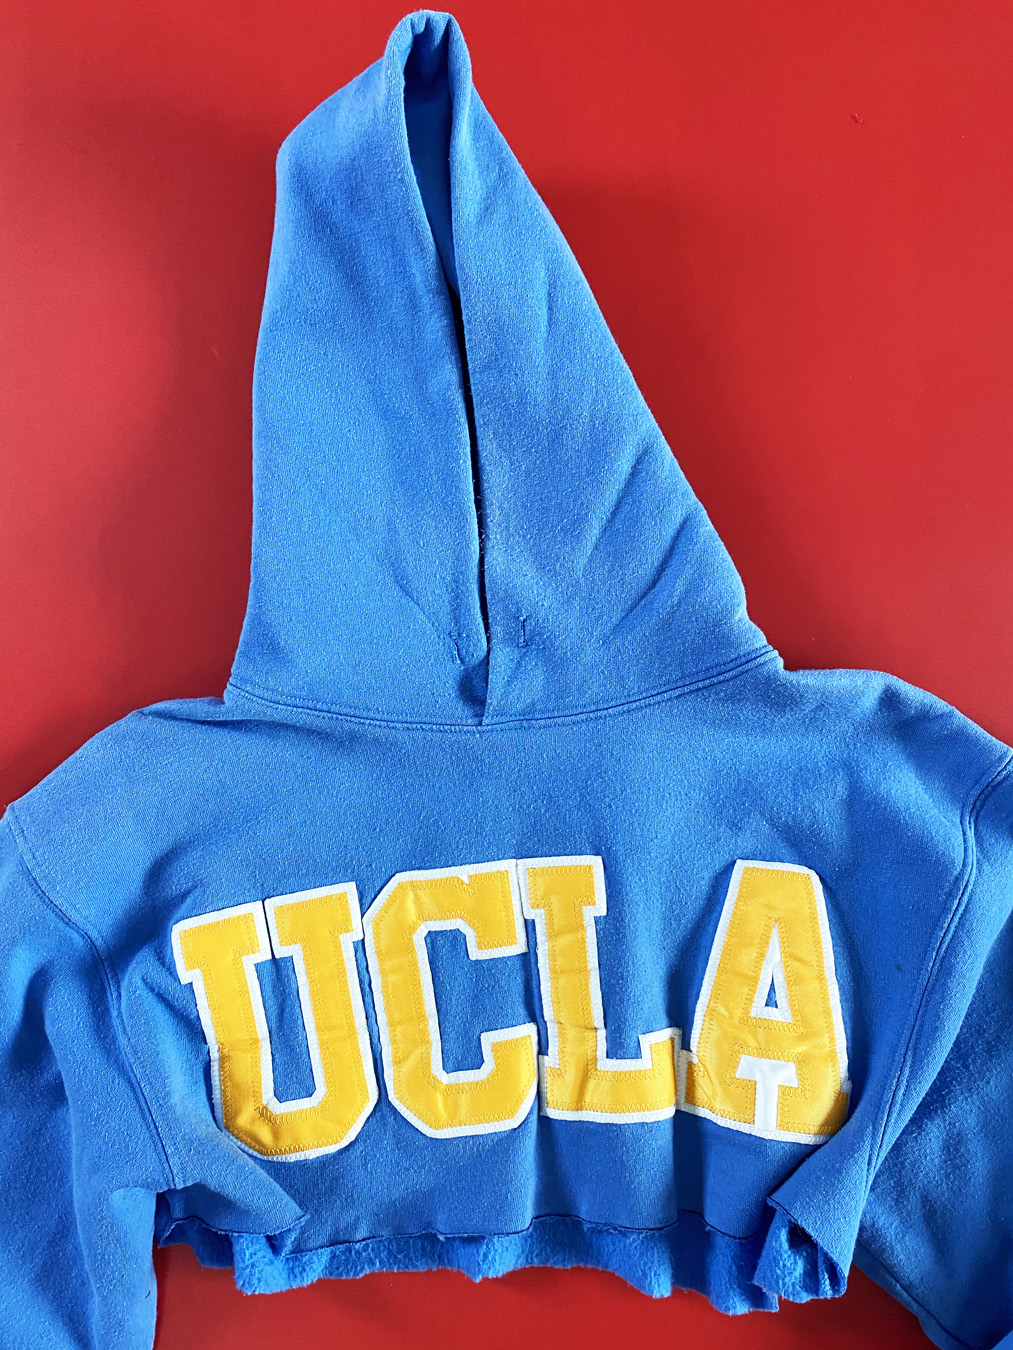 UCLA Bruins Cropped Hoodie - 5 Star Vintage